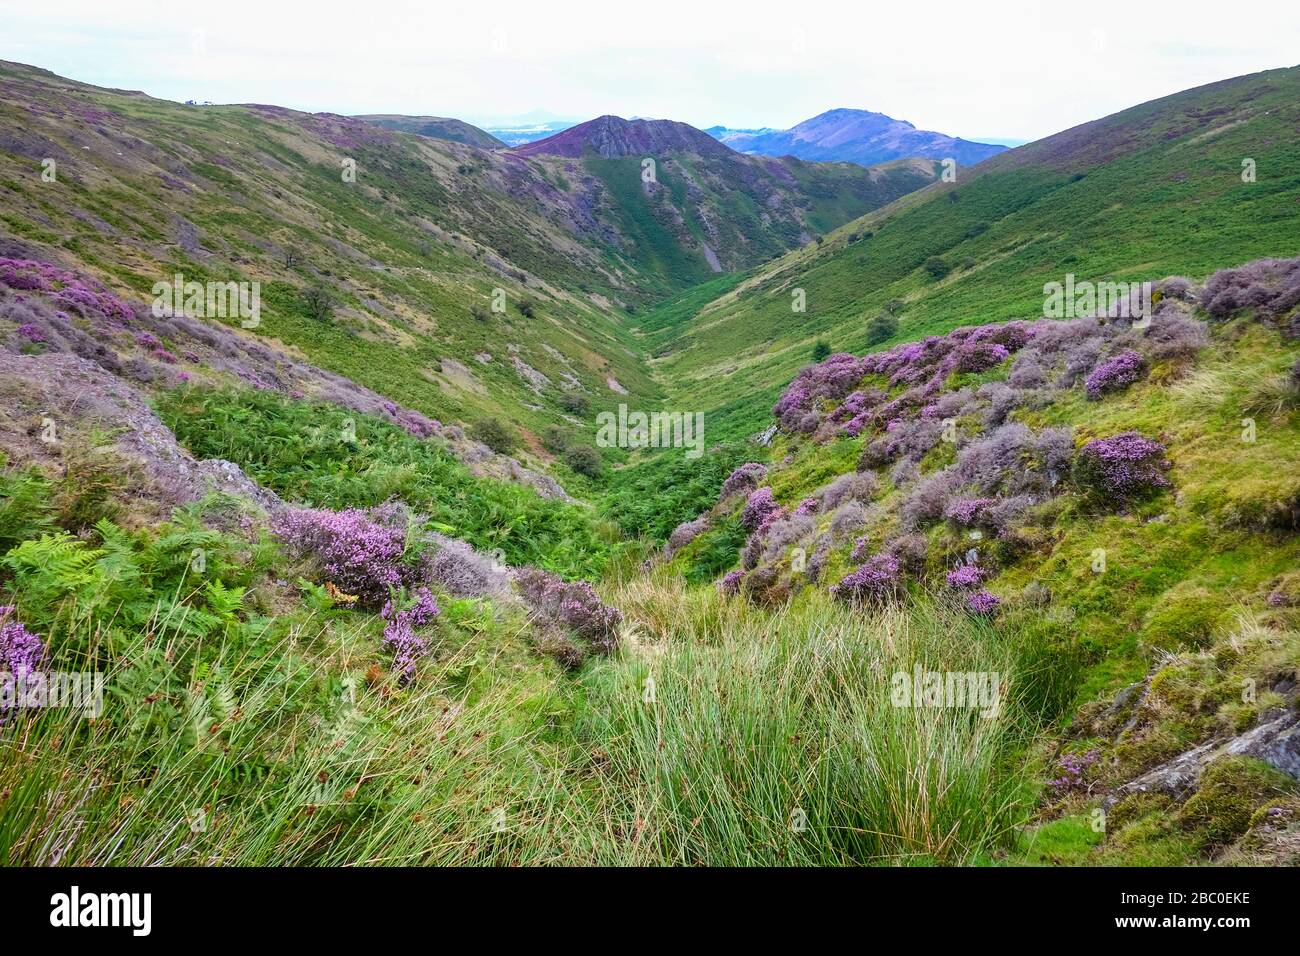 La gama Long Mynd en las afueras de la ciudad de Church Stretton en la zona de Shropshire Hills de la belleza natural excepcional, Reino Unido Foto de stock